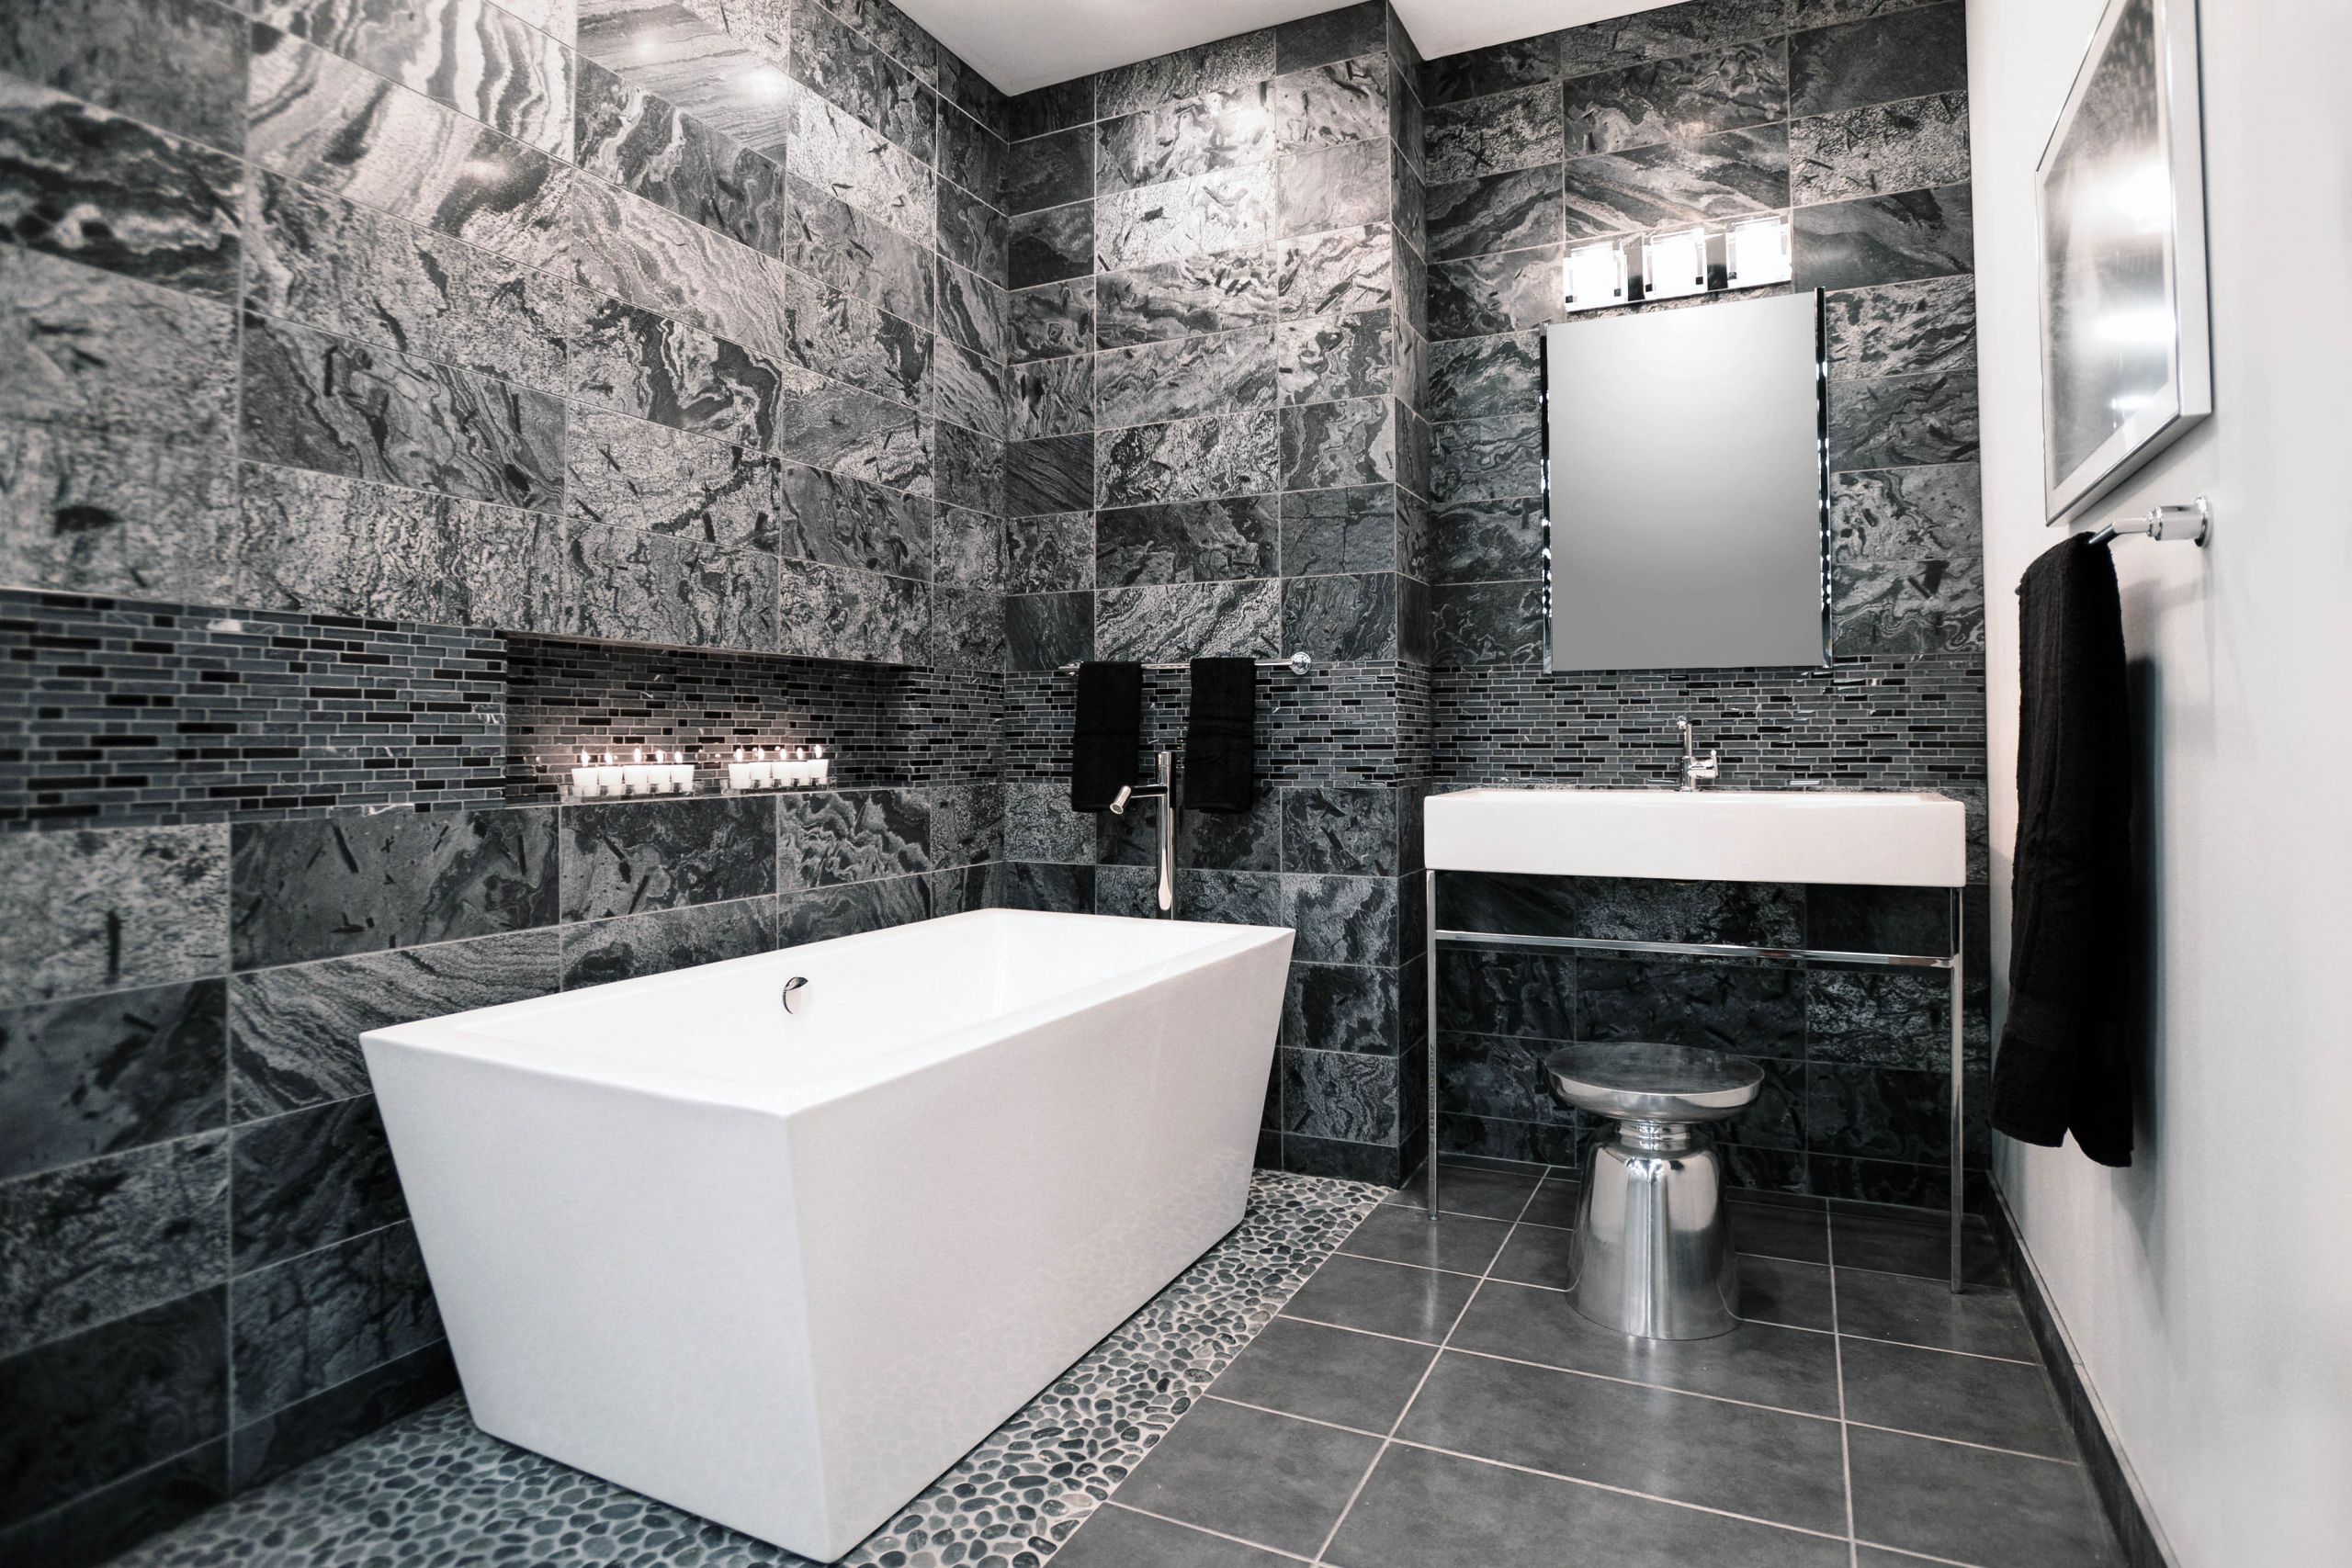 Silver Bathroom Decor
 The Tile Shop Introduces 2015 Design Preview Providing